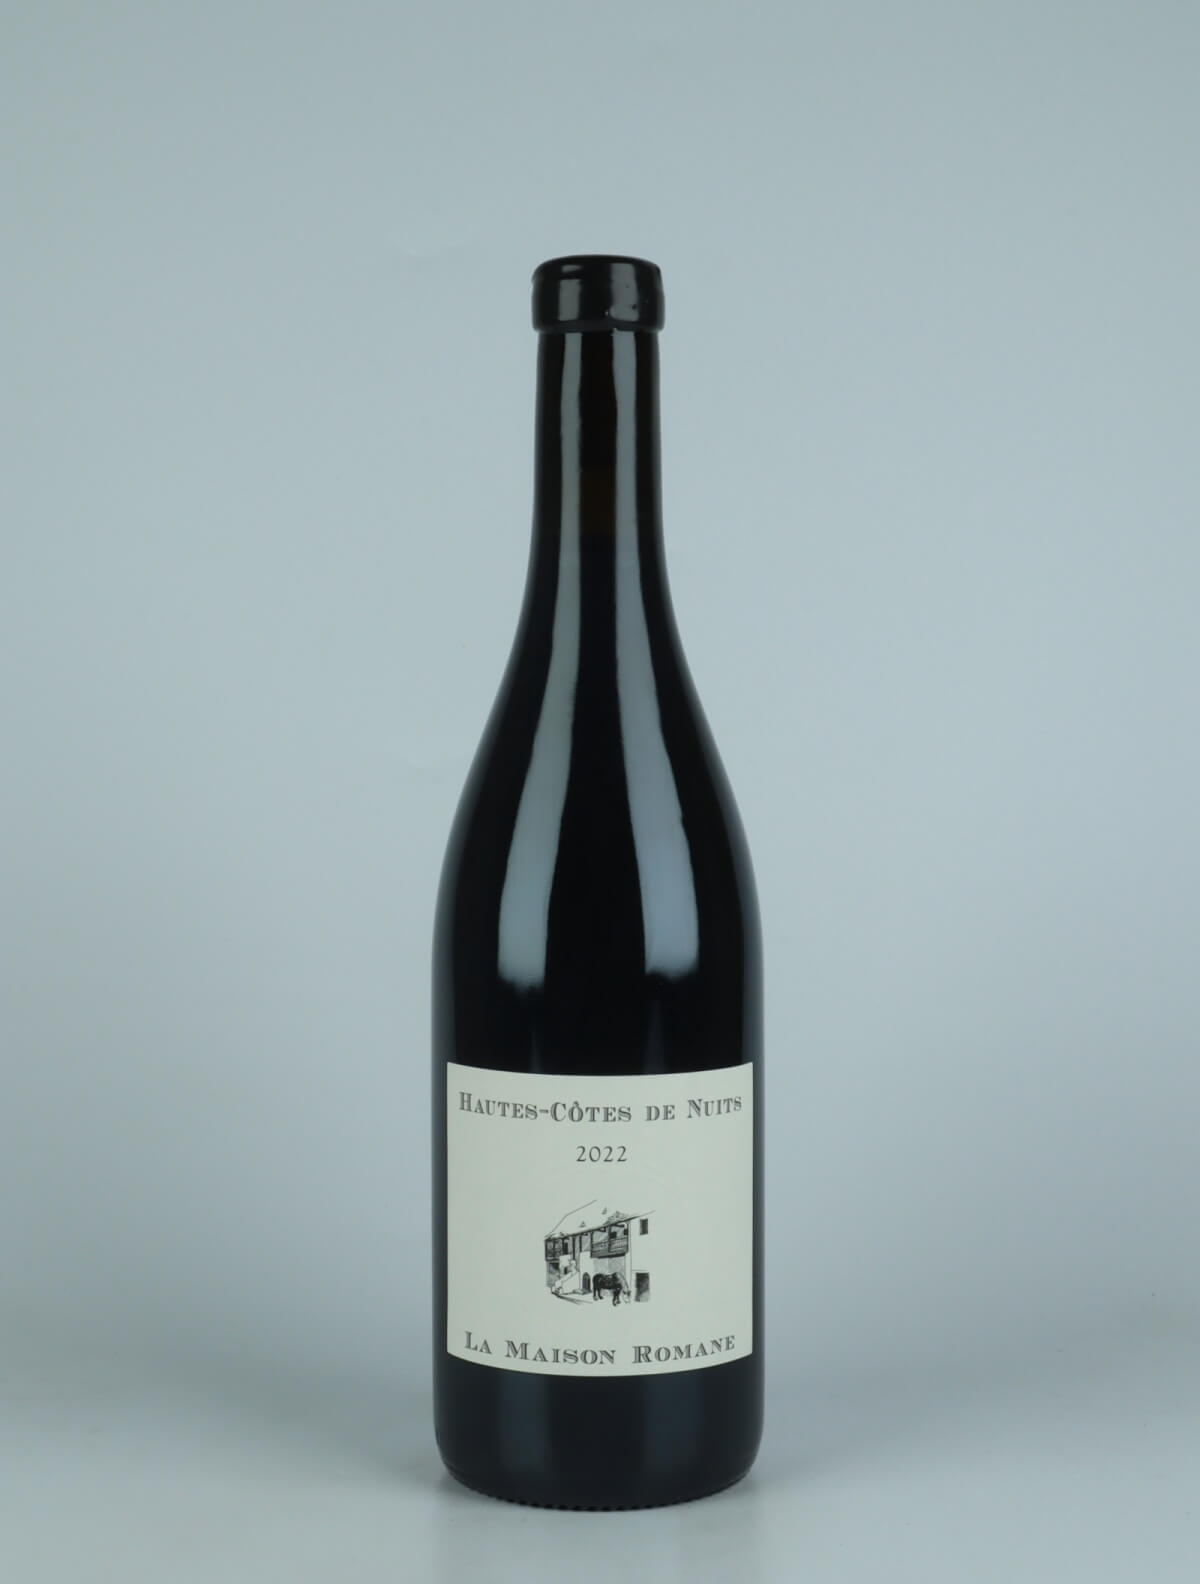 A bottle 2022 Hautes Côtes de Nuits Rouge Red wine from La Maison Romane, Burgundy in France